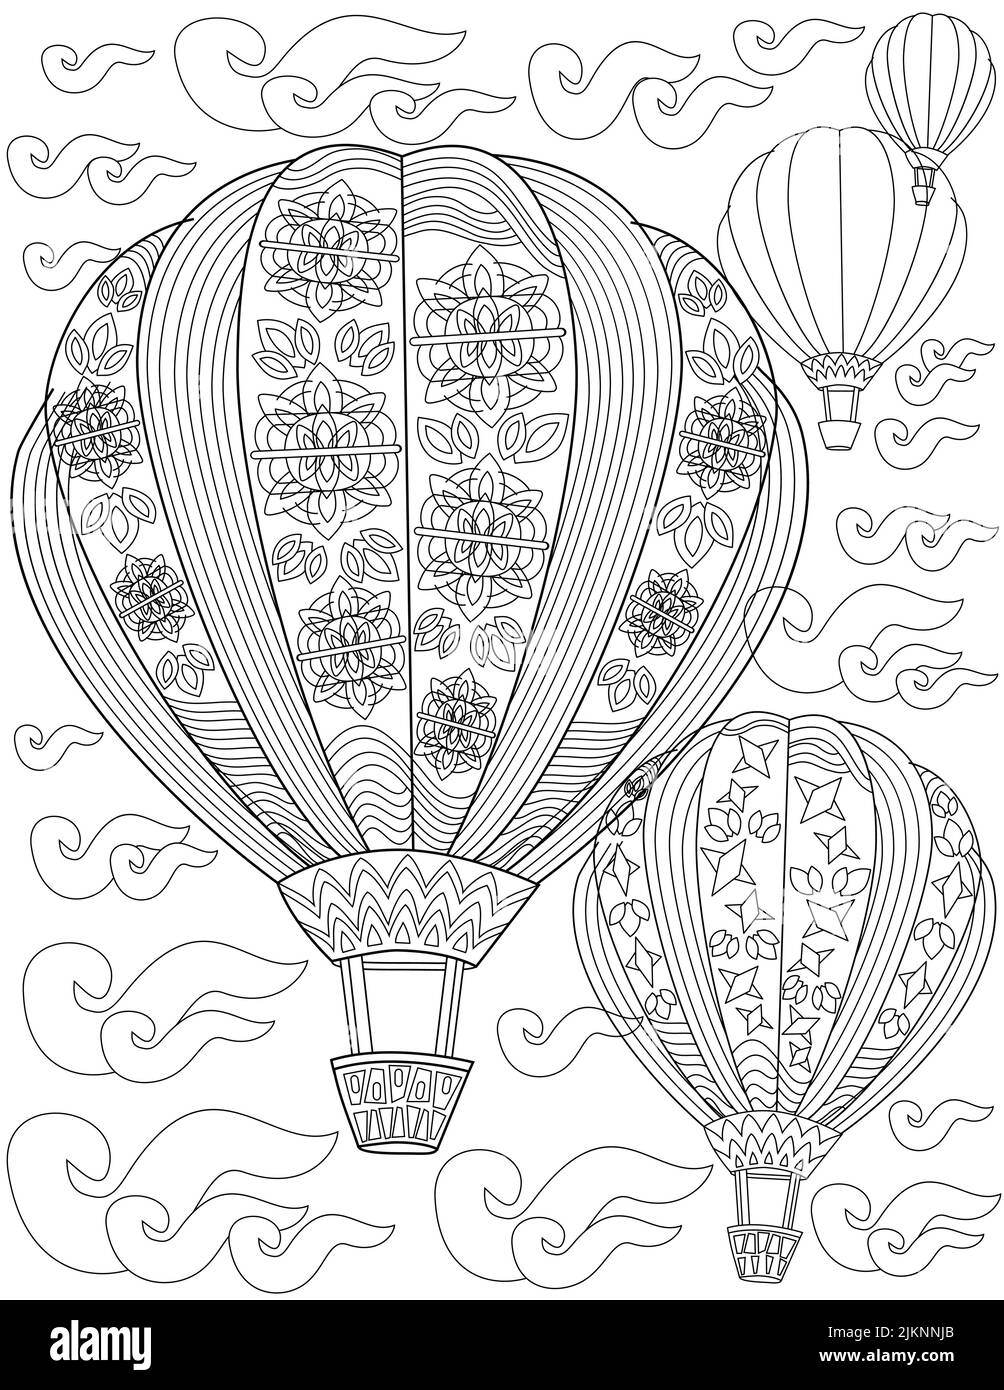 Pagina del libro da colorare con le palloncini ad aria calda con i disegni floreali che Flying in cielo. Foglio da colorare con palloncini da fuoco vuoti in nuvole. Navi Illustrazione Vettoriale